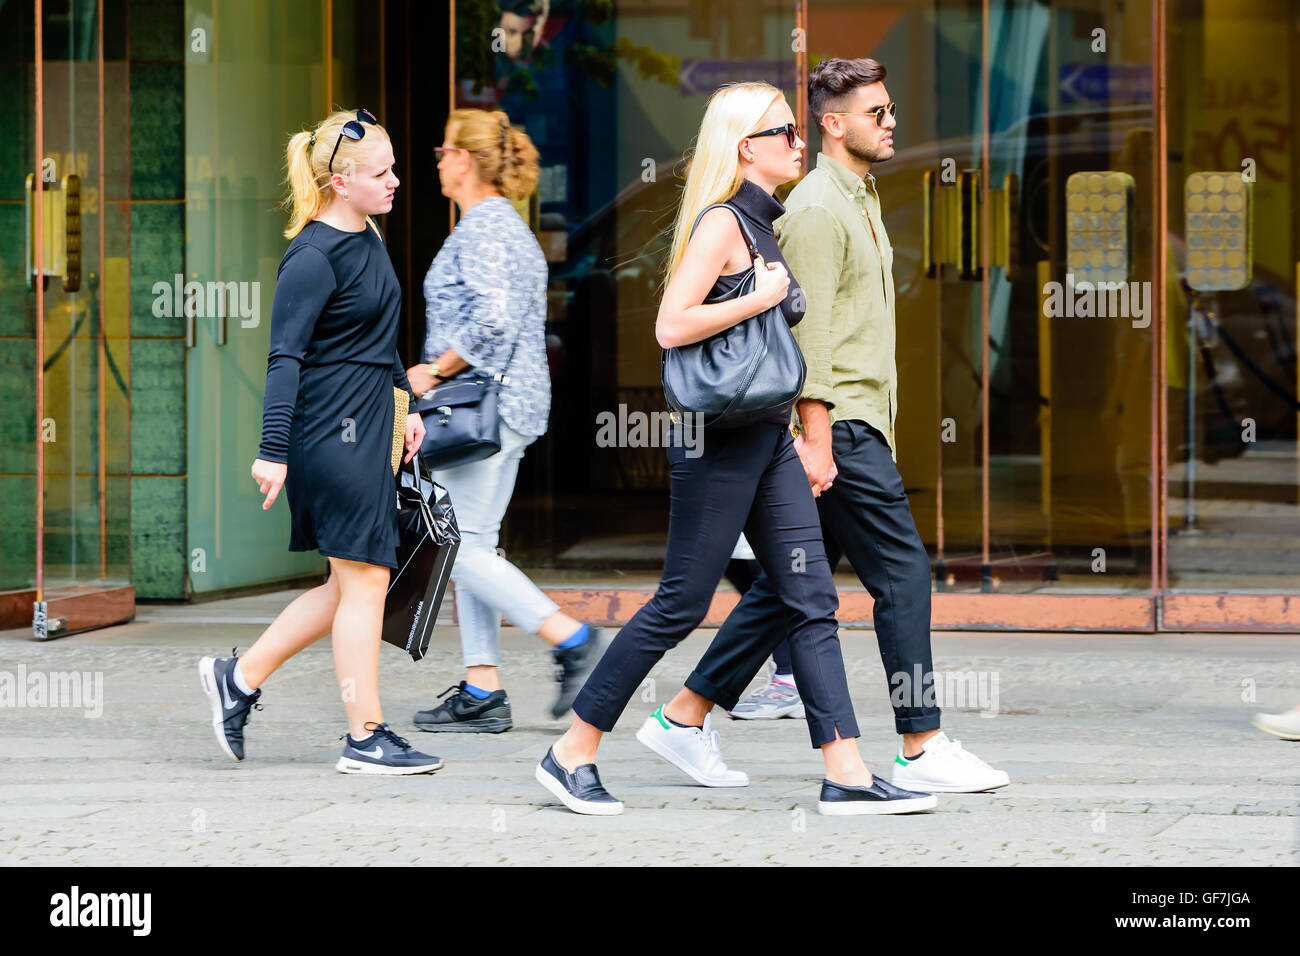 Göteborg, Schweden - 25. Juli 2016: Unbekannte paar zu Fuß auf dem Bürgersteig, Hand in Hand. Echte Menschen im Alltag. Stockfoto